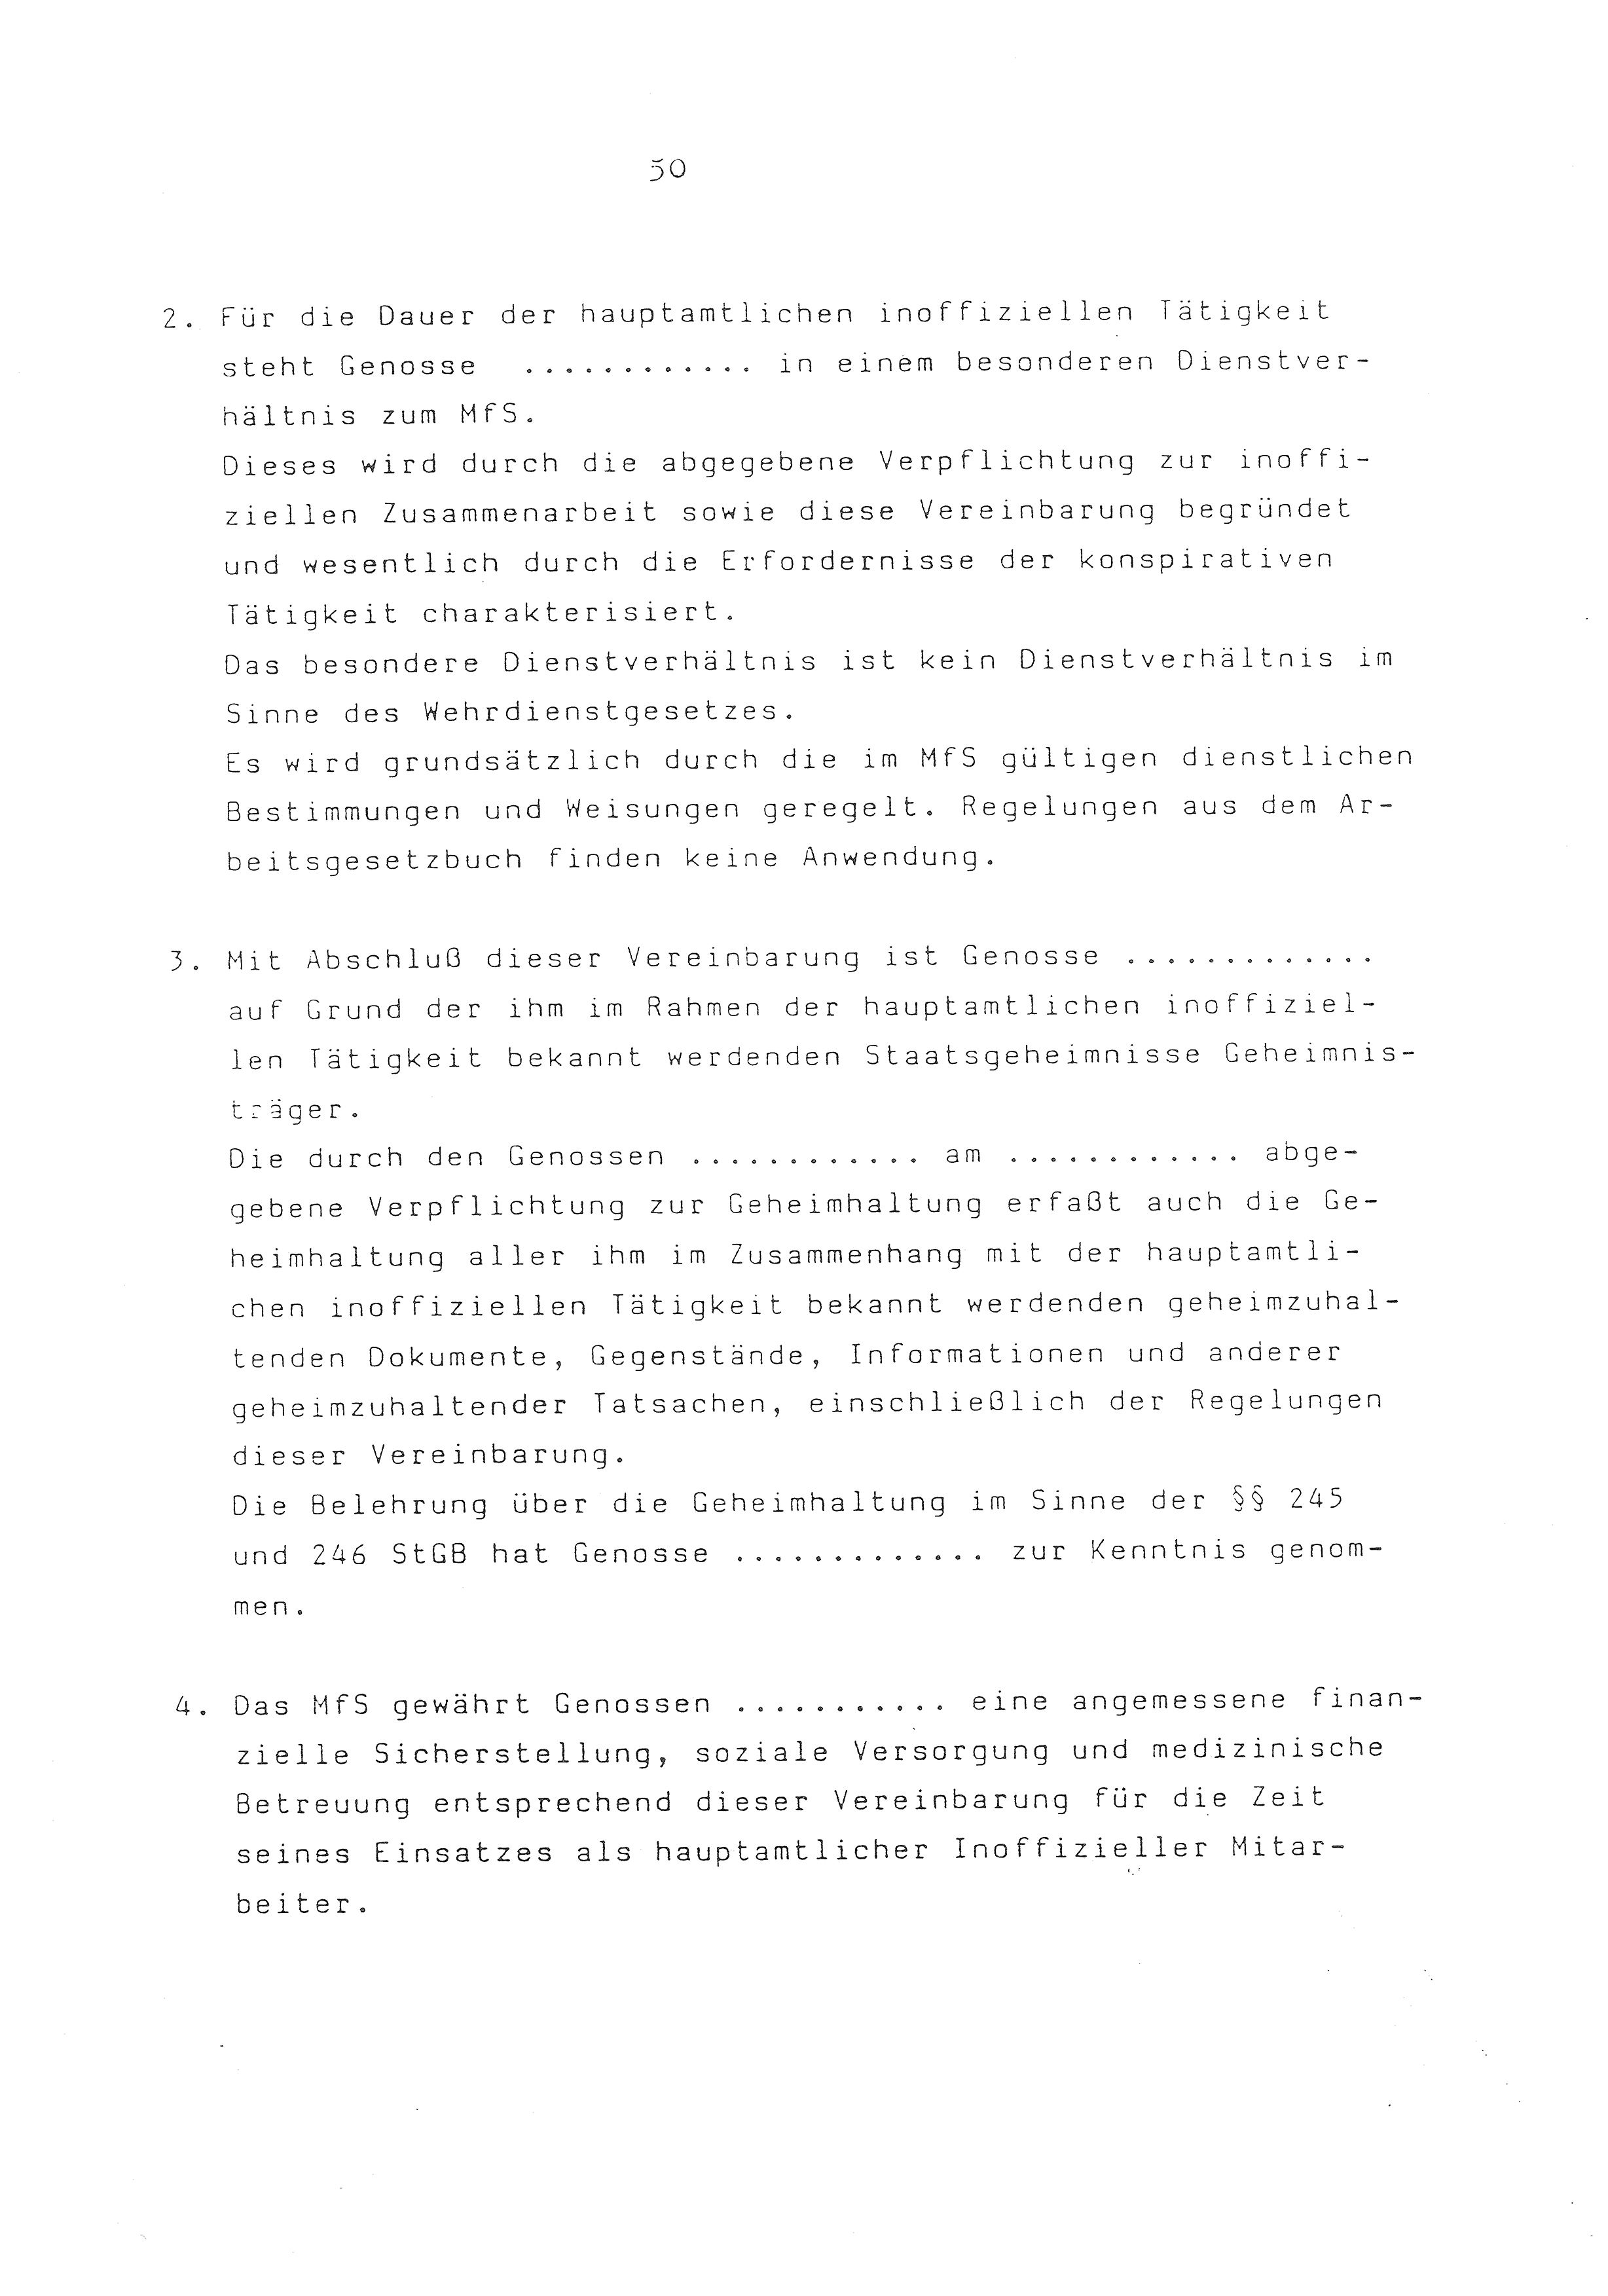 2. Durchführungsbestimmung zur Richtlinie 1/79 über die Arbeit mit hauptamtlichen Mitarbeitern des MfS (HIM), Deutsche Demokratische Republik (DDR), Ministerium für Staatssicherheit (MfS), Der Minister (Mielke), Geheime Verschlußsache (GVS) ooo8-44/86, Berlin 1986, Seite 50 (2. DB RL 1/79 DDR MfS Min. GVS ooo8-44/86 1986, S. 50)